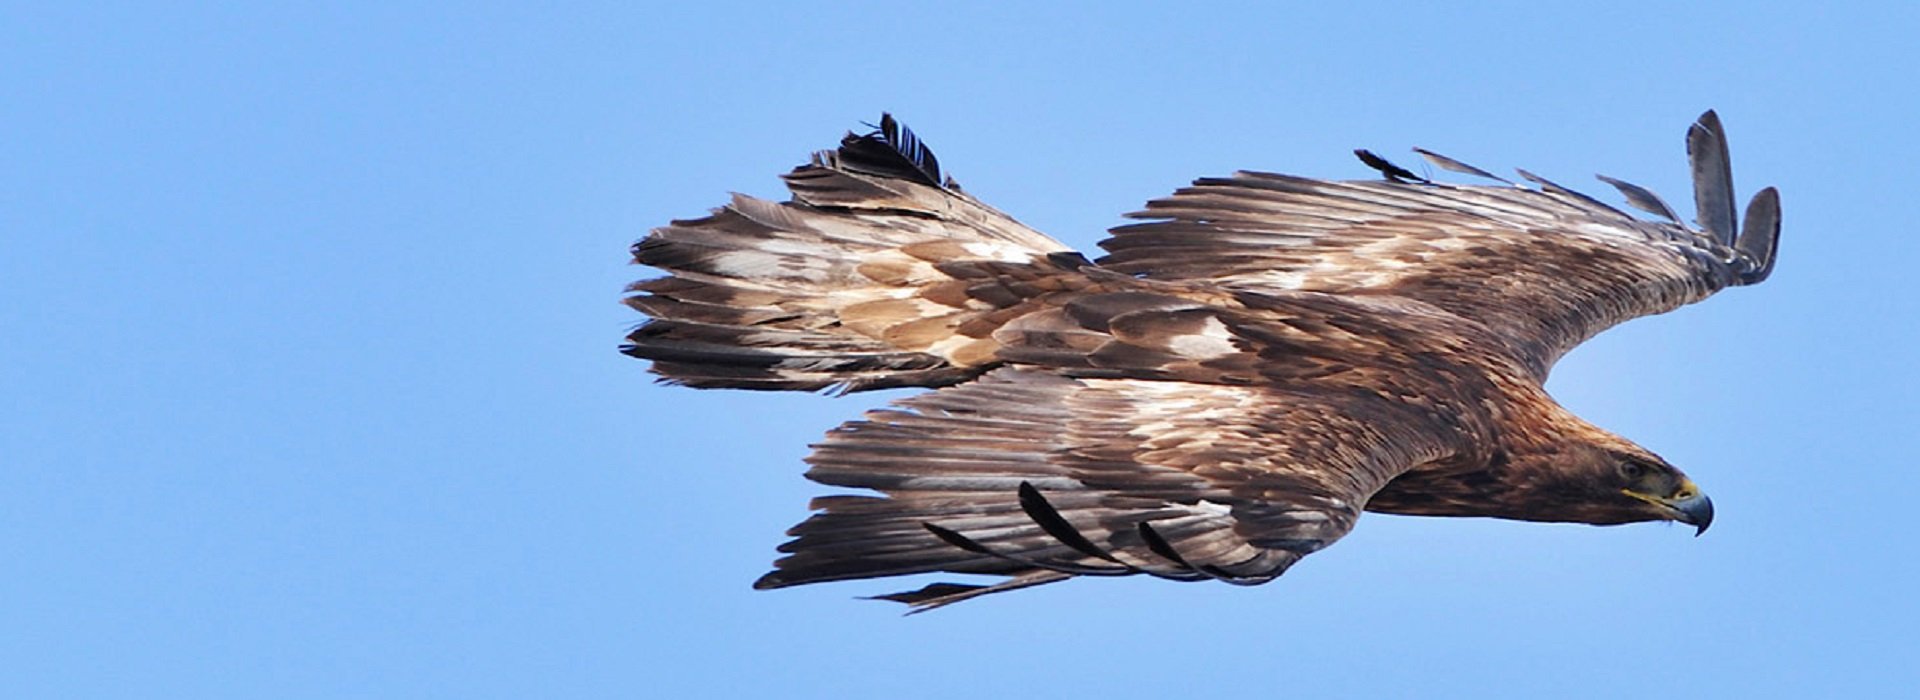 Adult Golden Eagle in flight